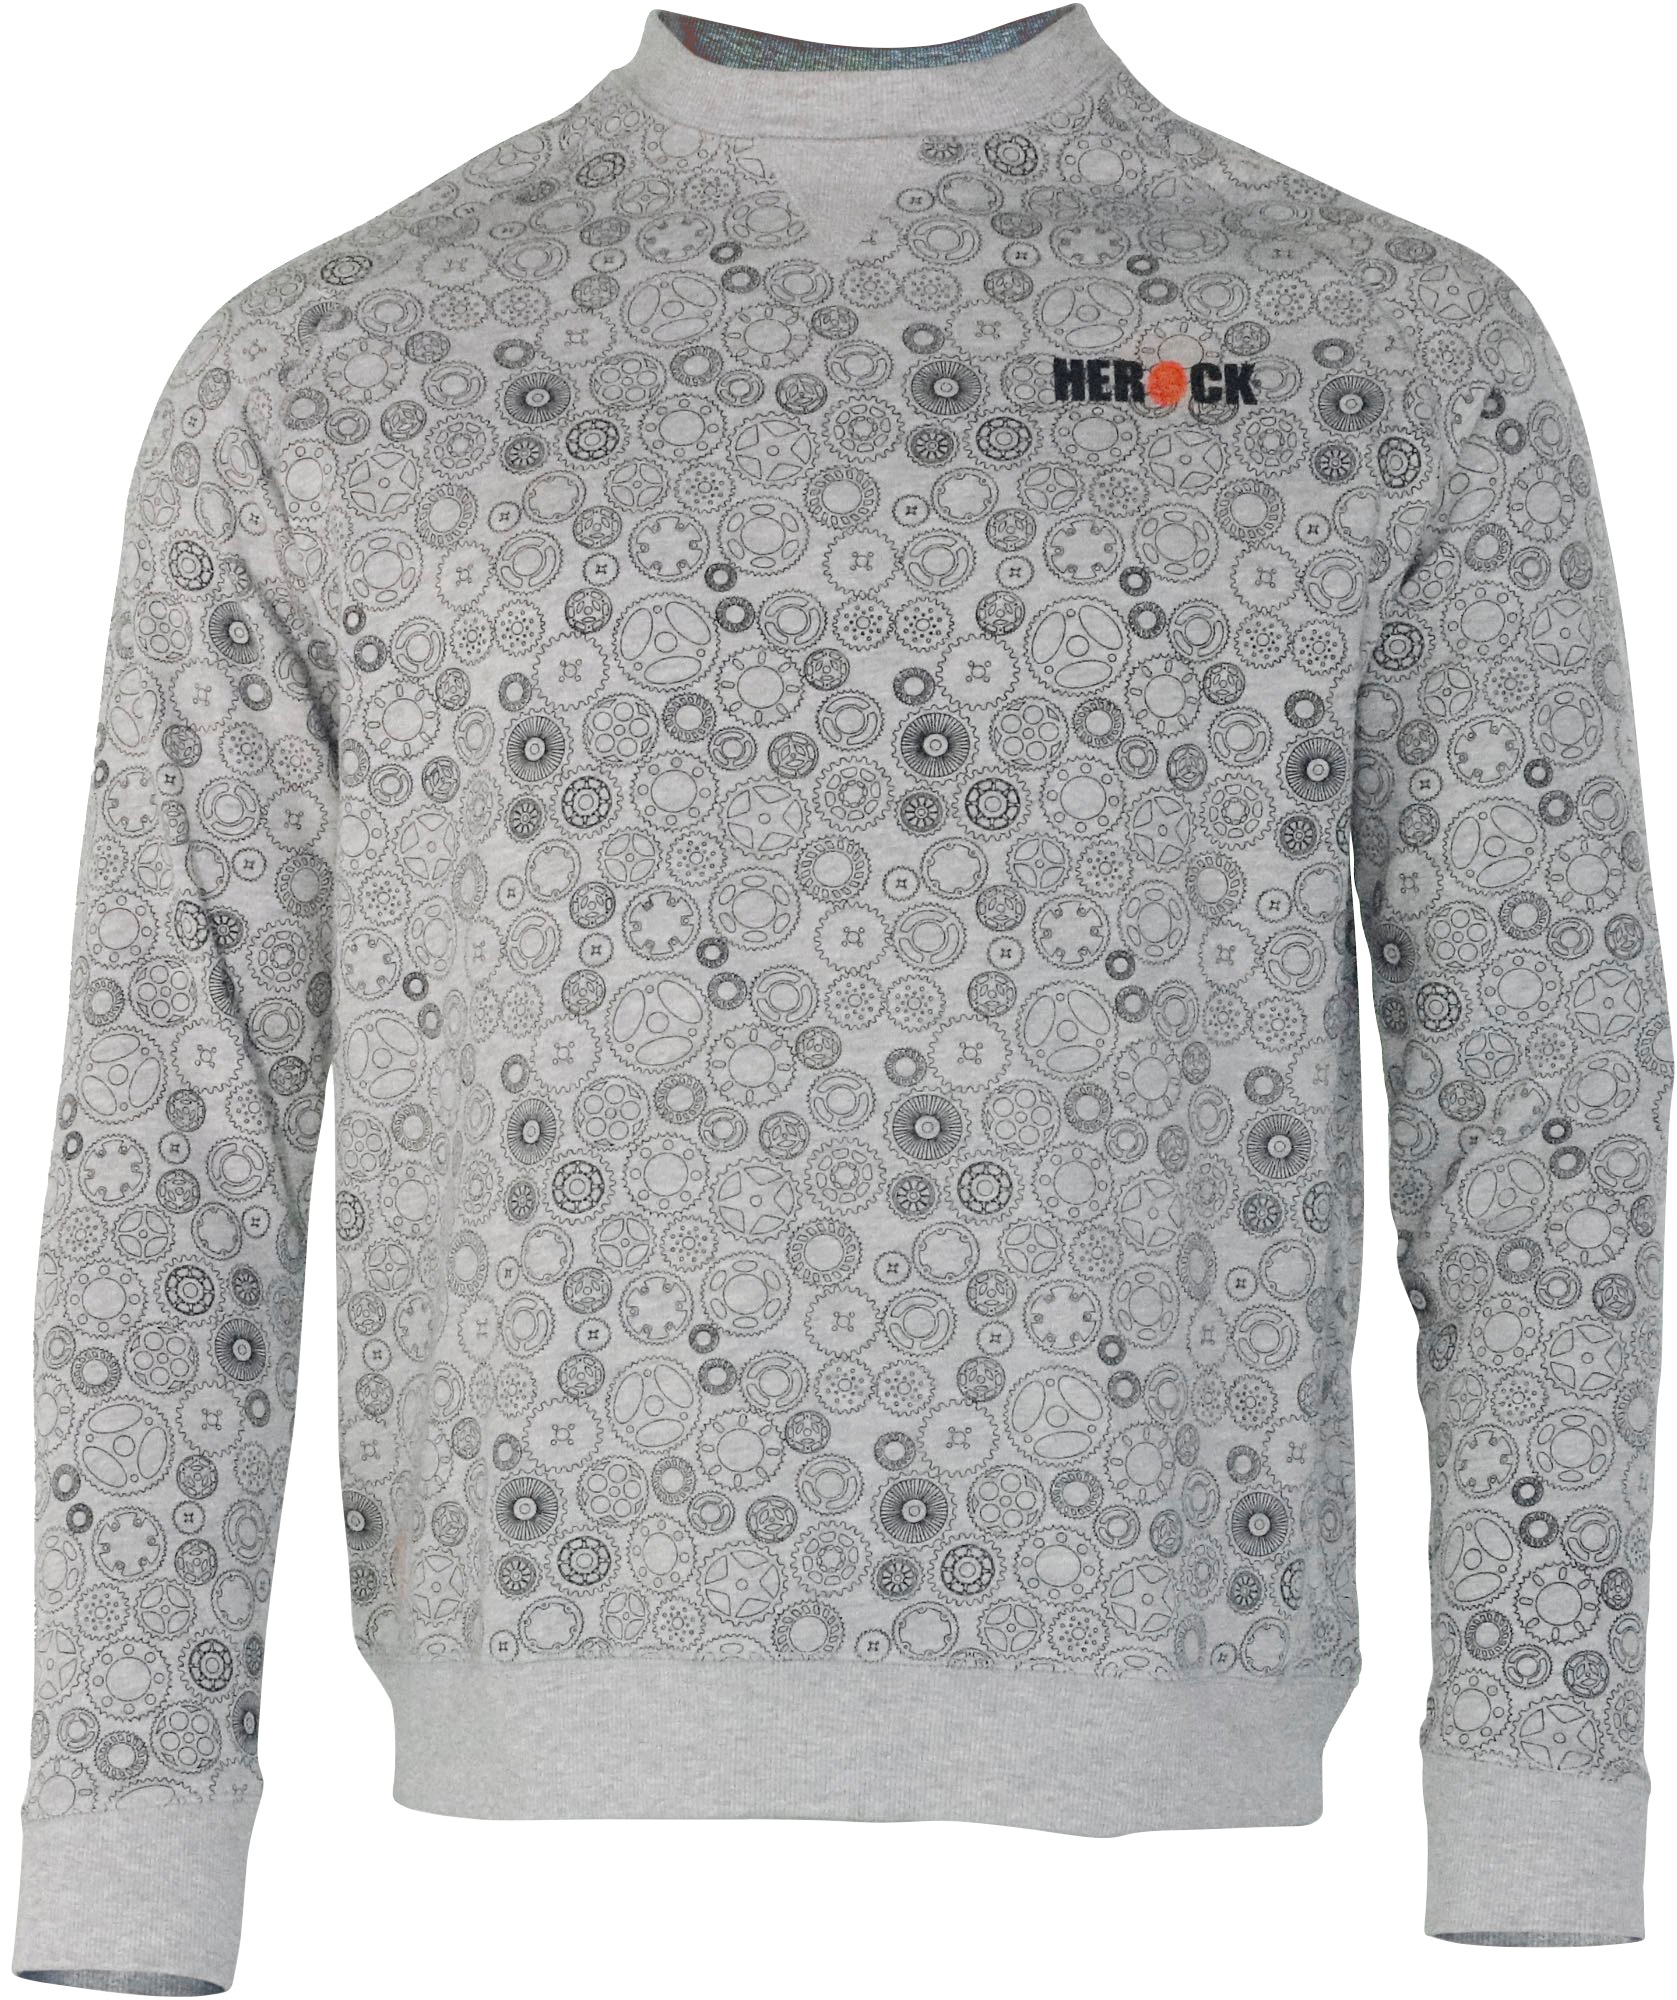 & | bestellen Herock®-Aufdruck, angenehmes Herock »Engineer«, Tragegefühl Sweater BAUR Zahnrad-Muster Mit